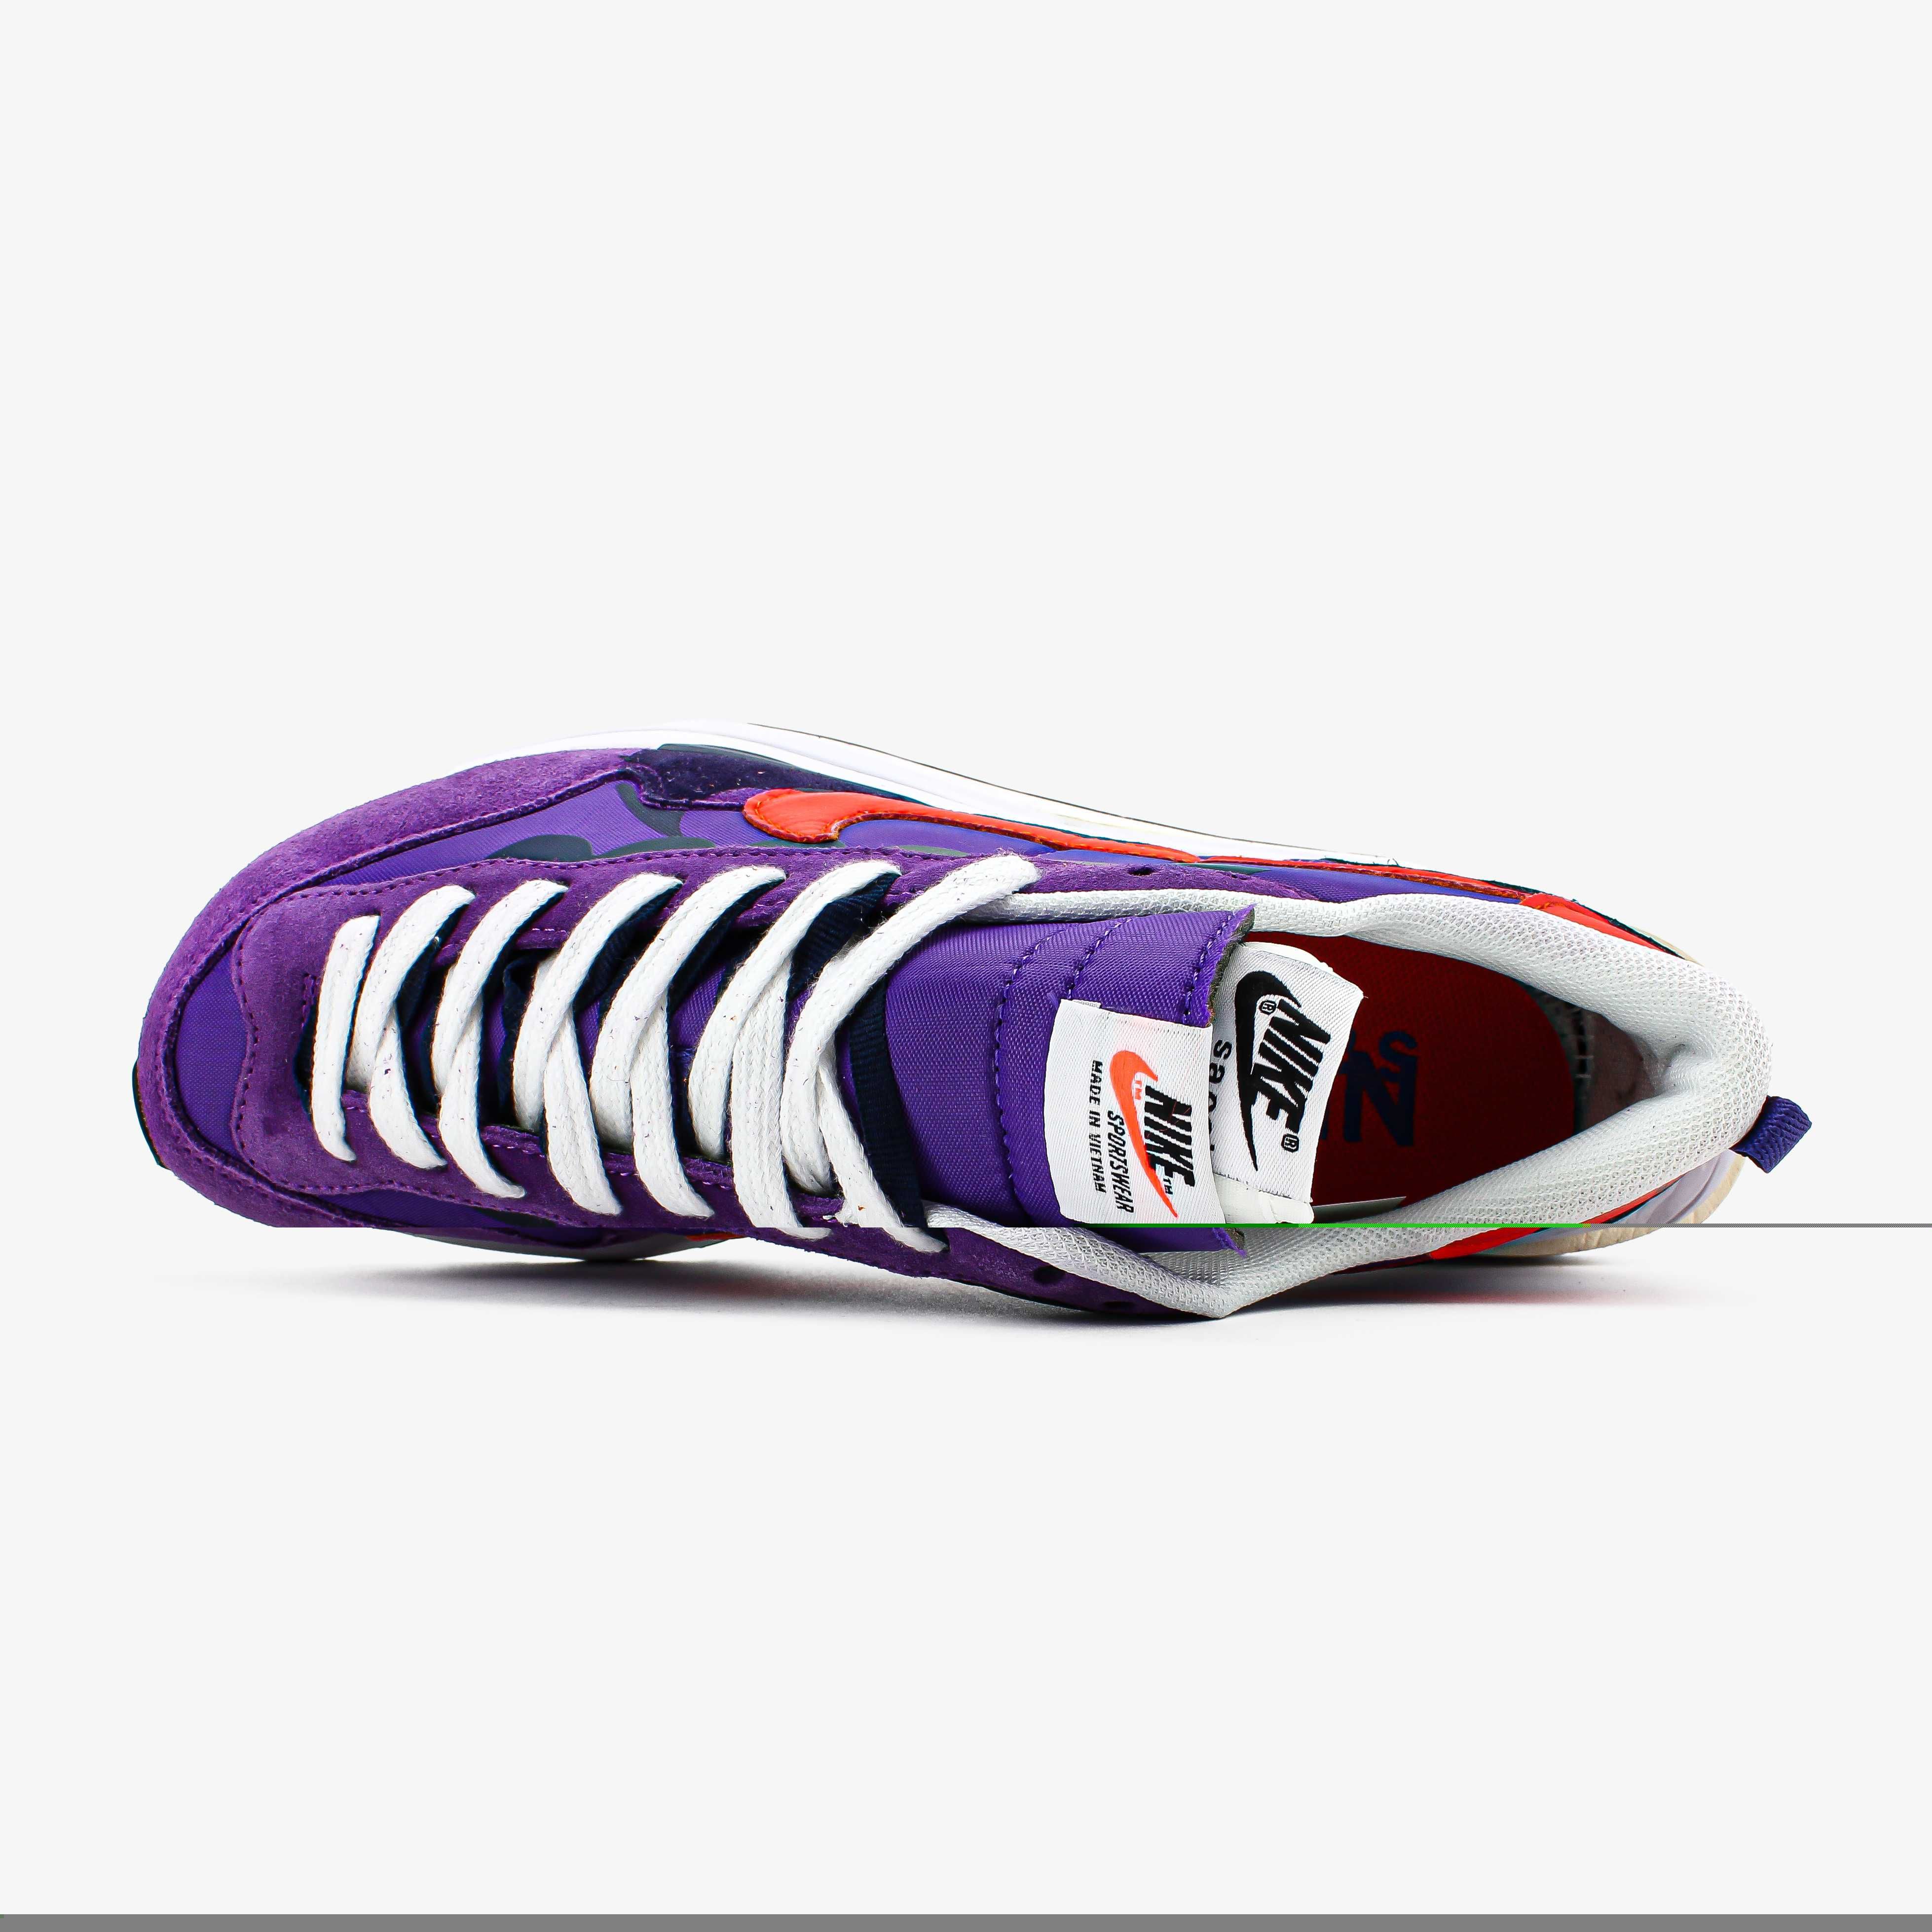 Sacai x Nike VaporWaffle "Dark Iris"